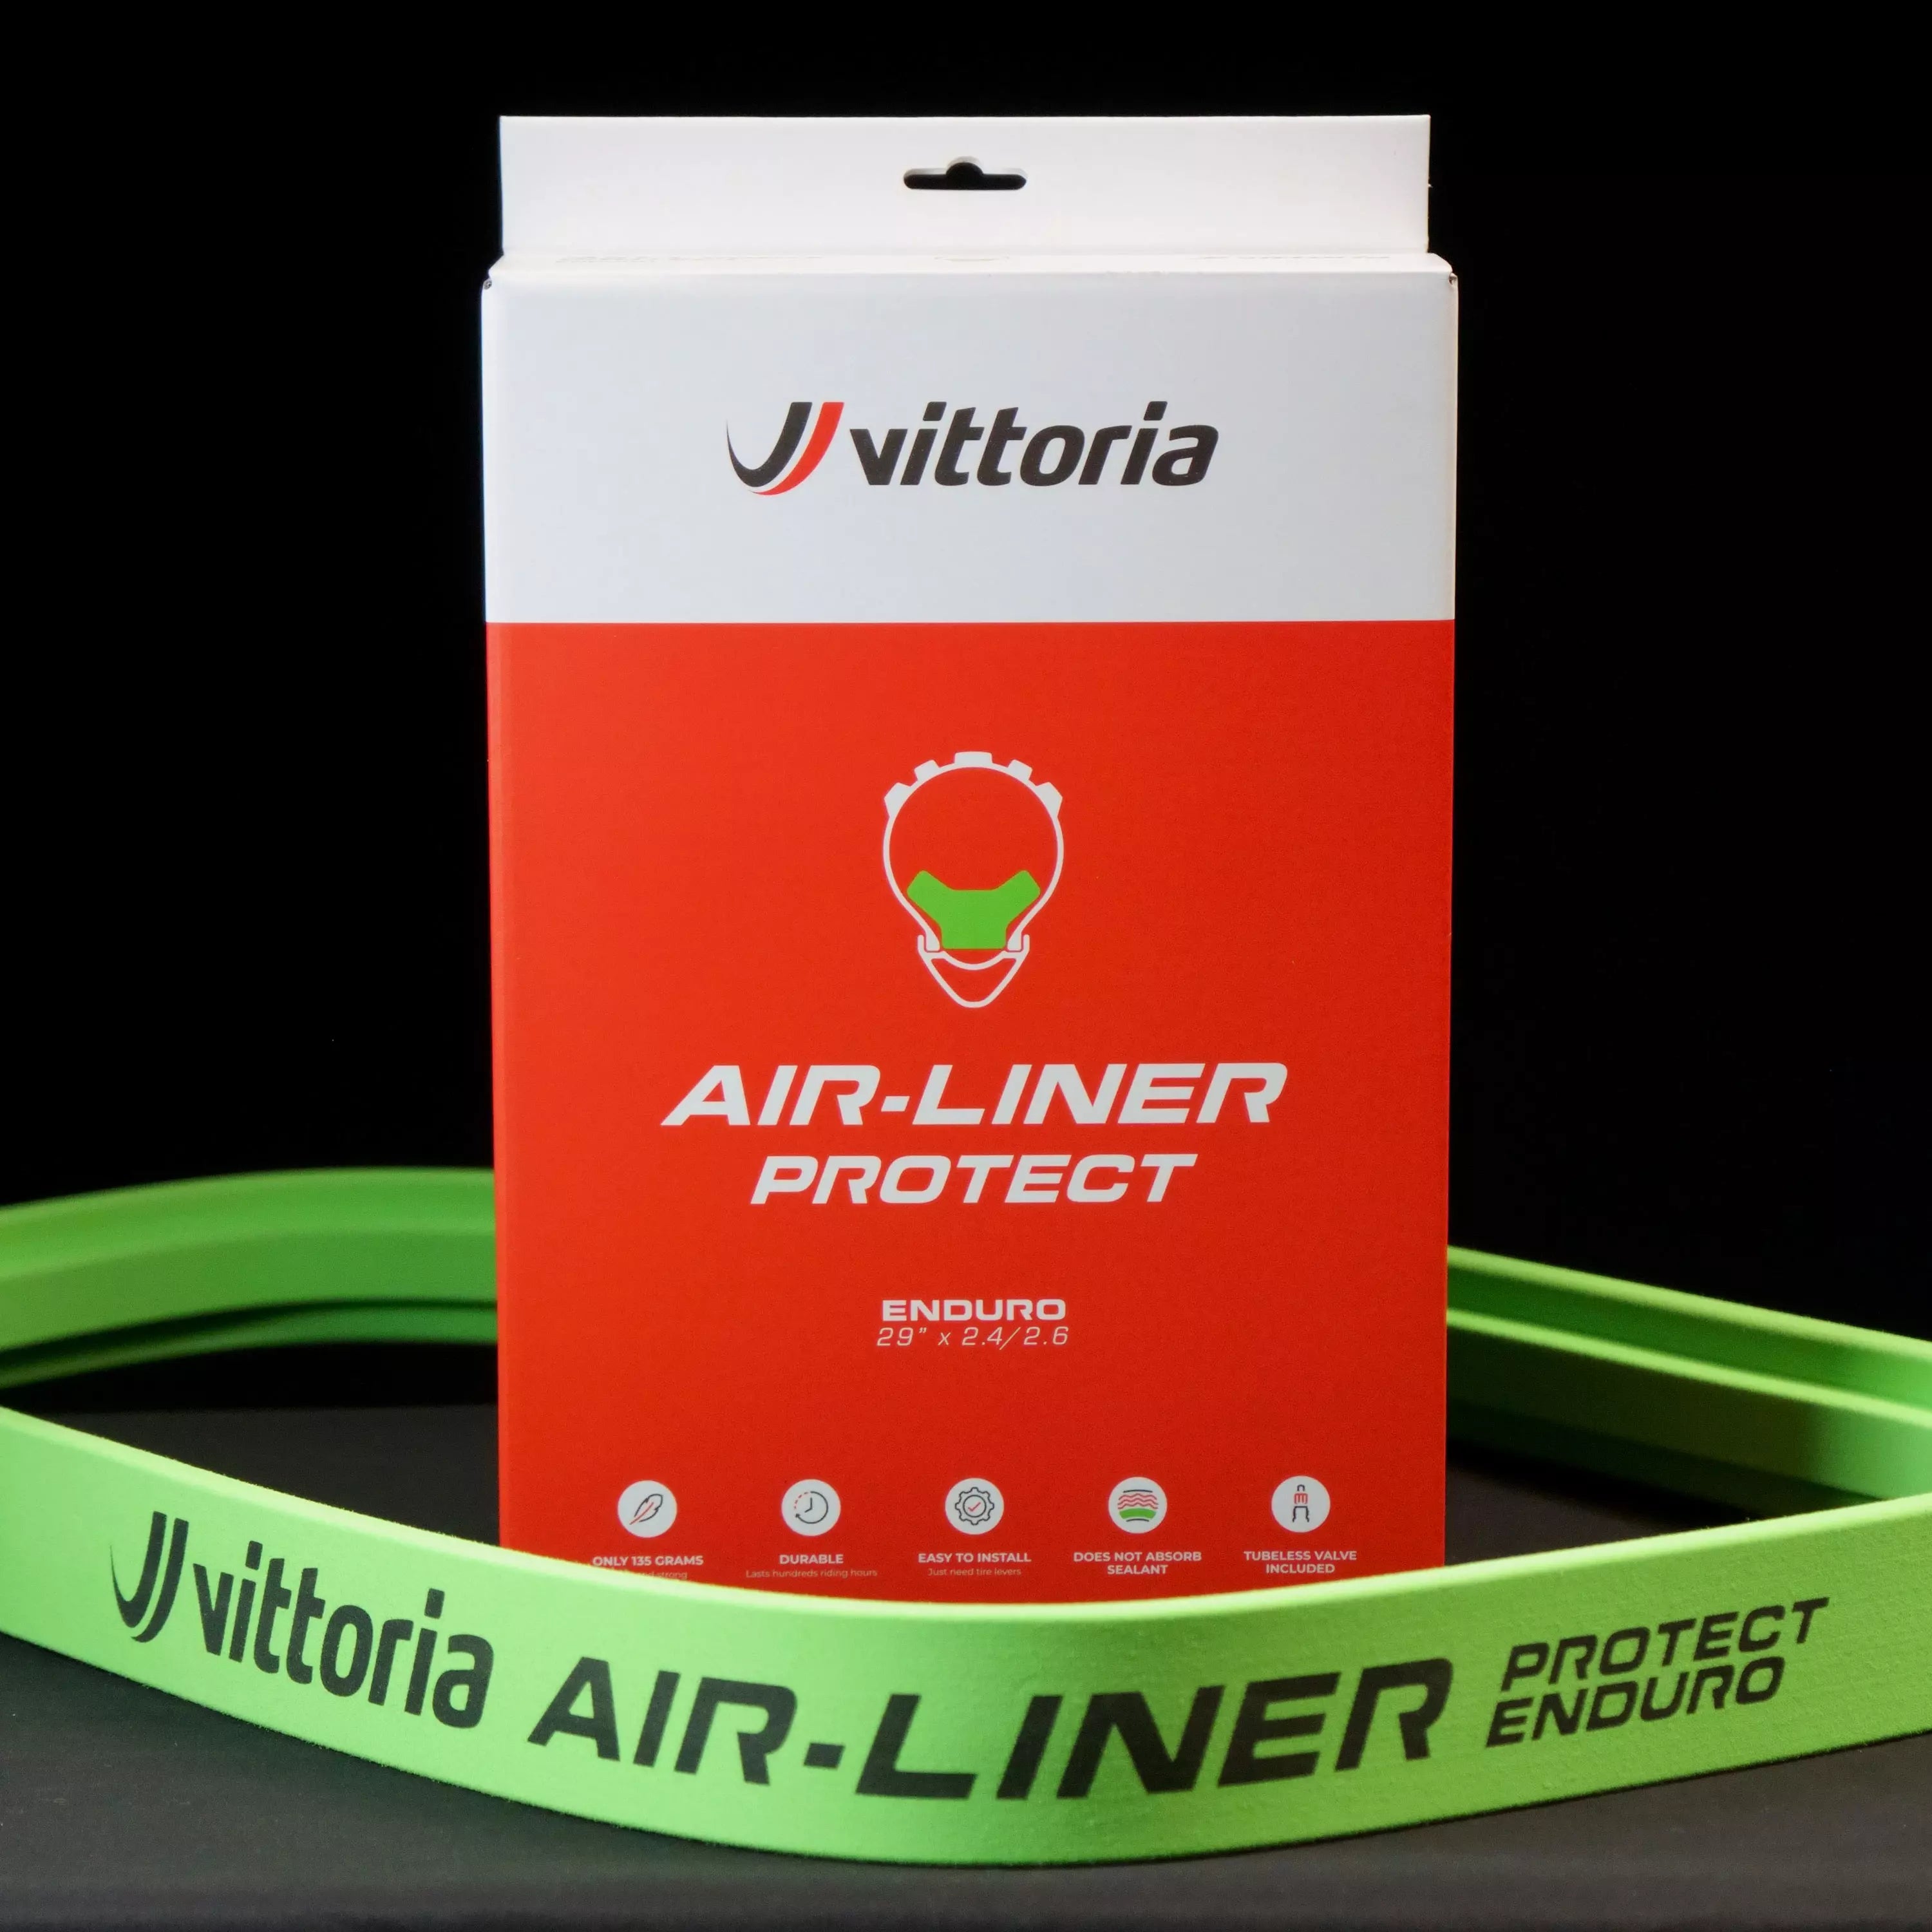 Air-Liner Protect Enduro